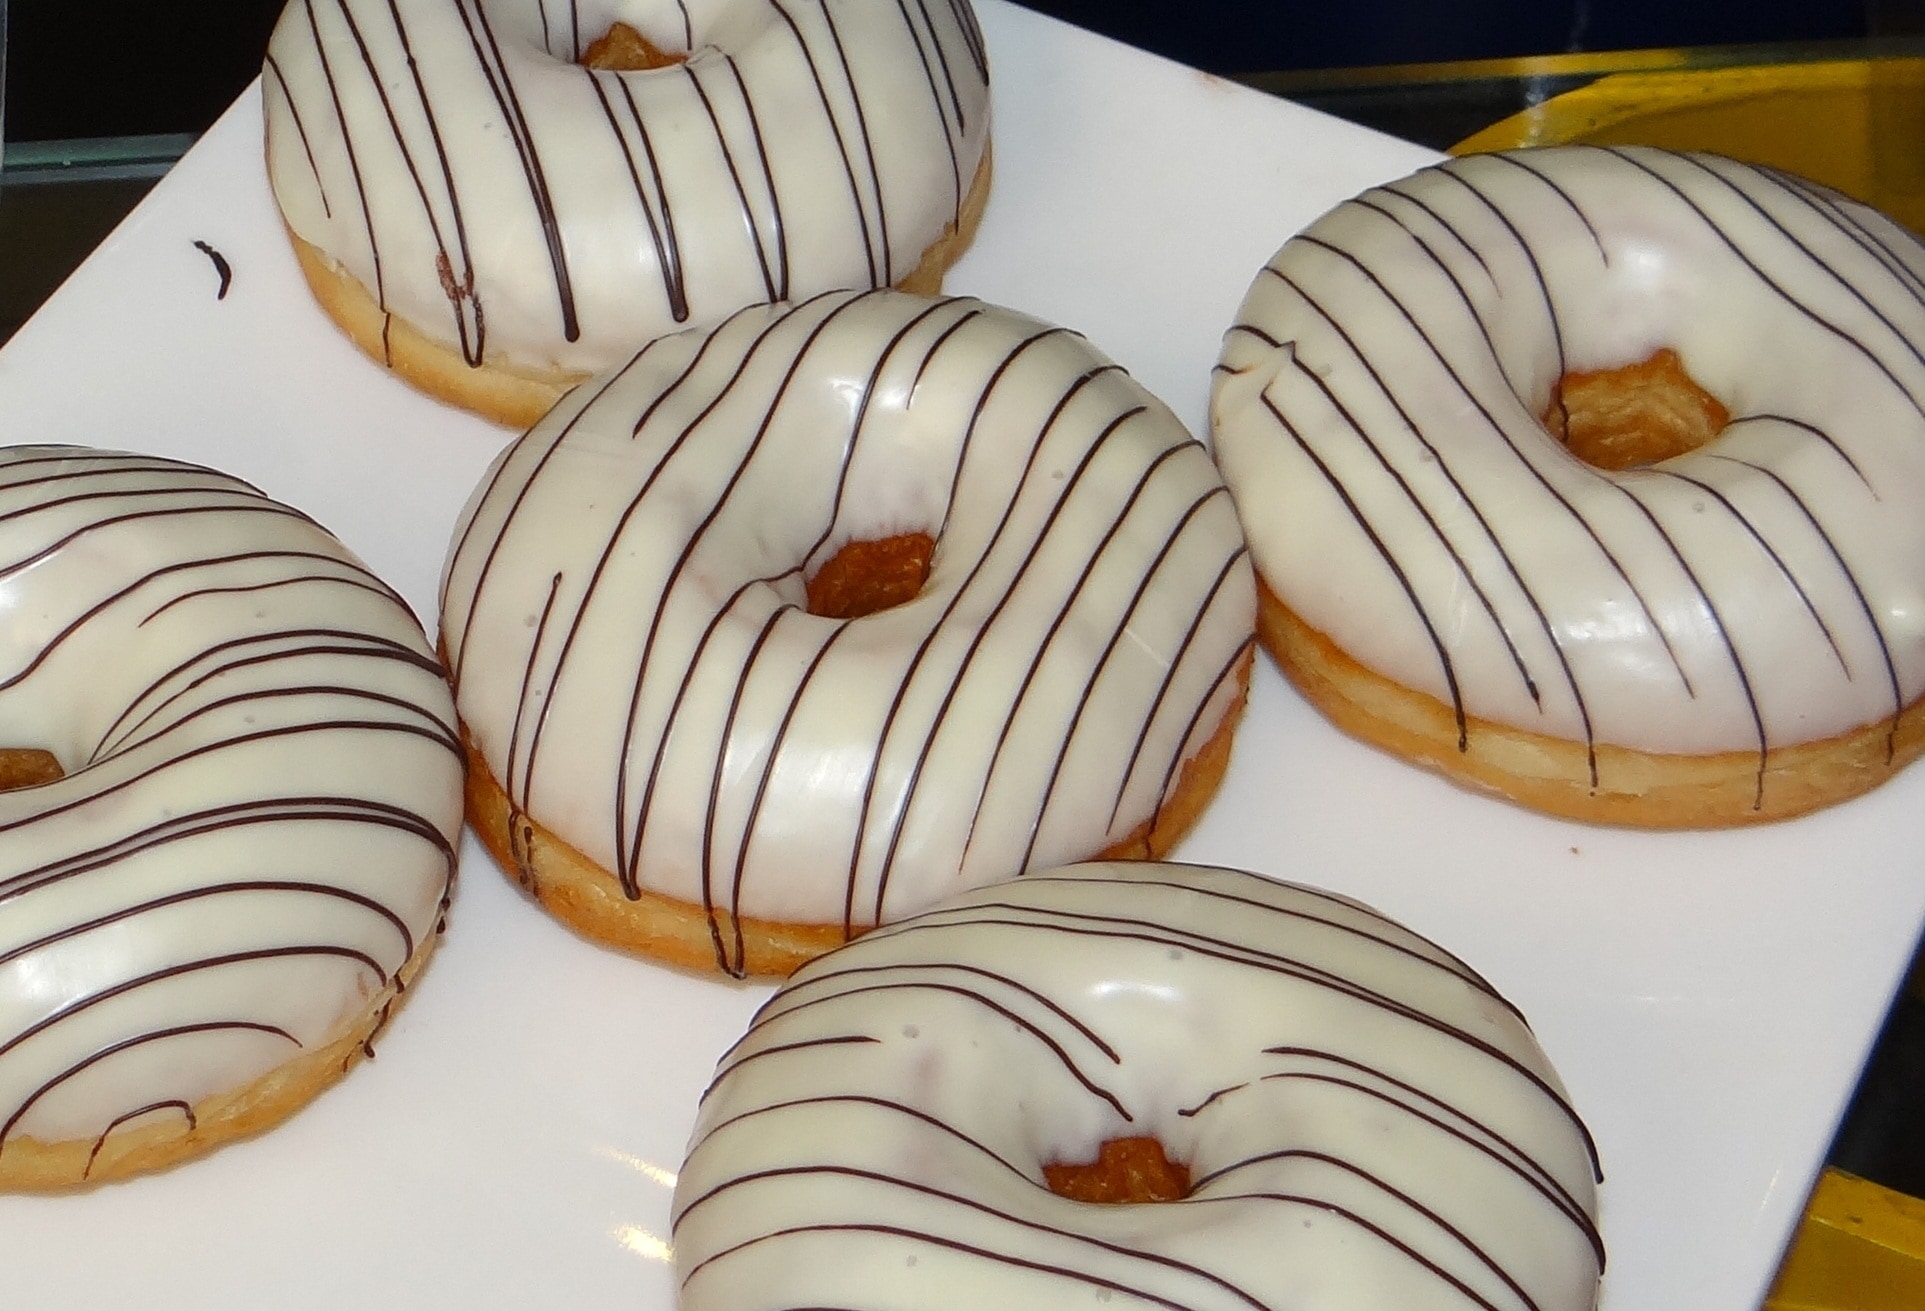 four white glazed doughnuts